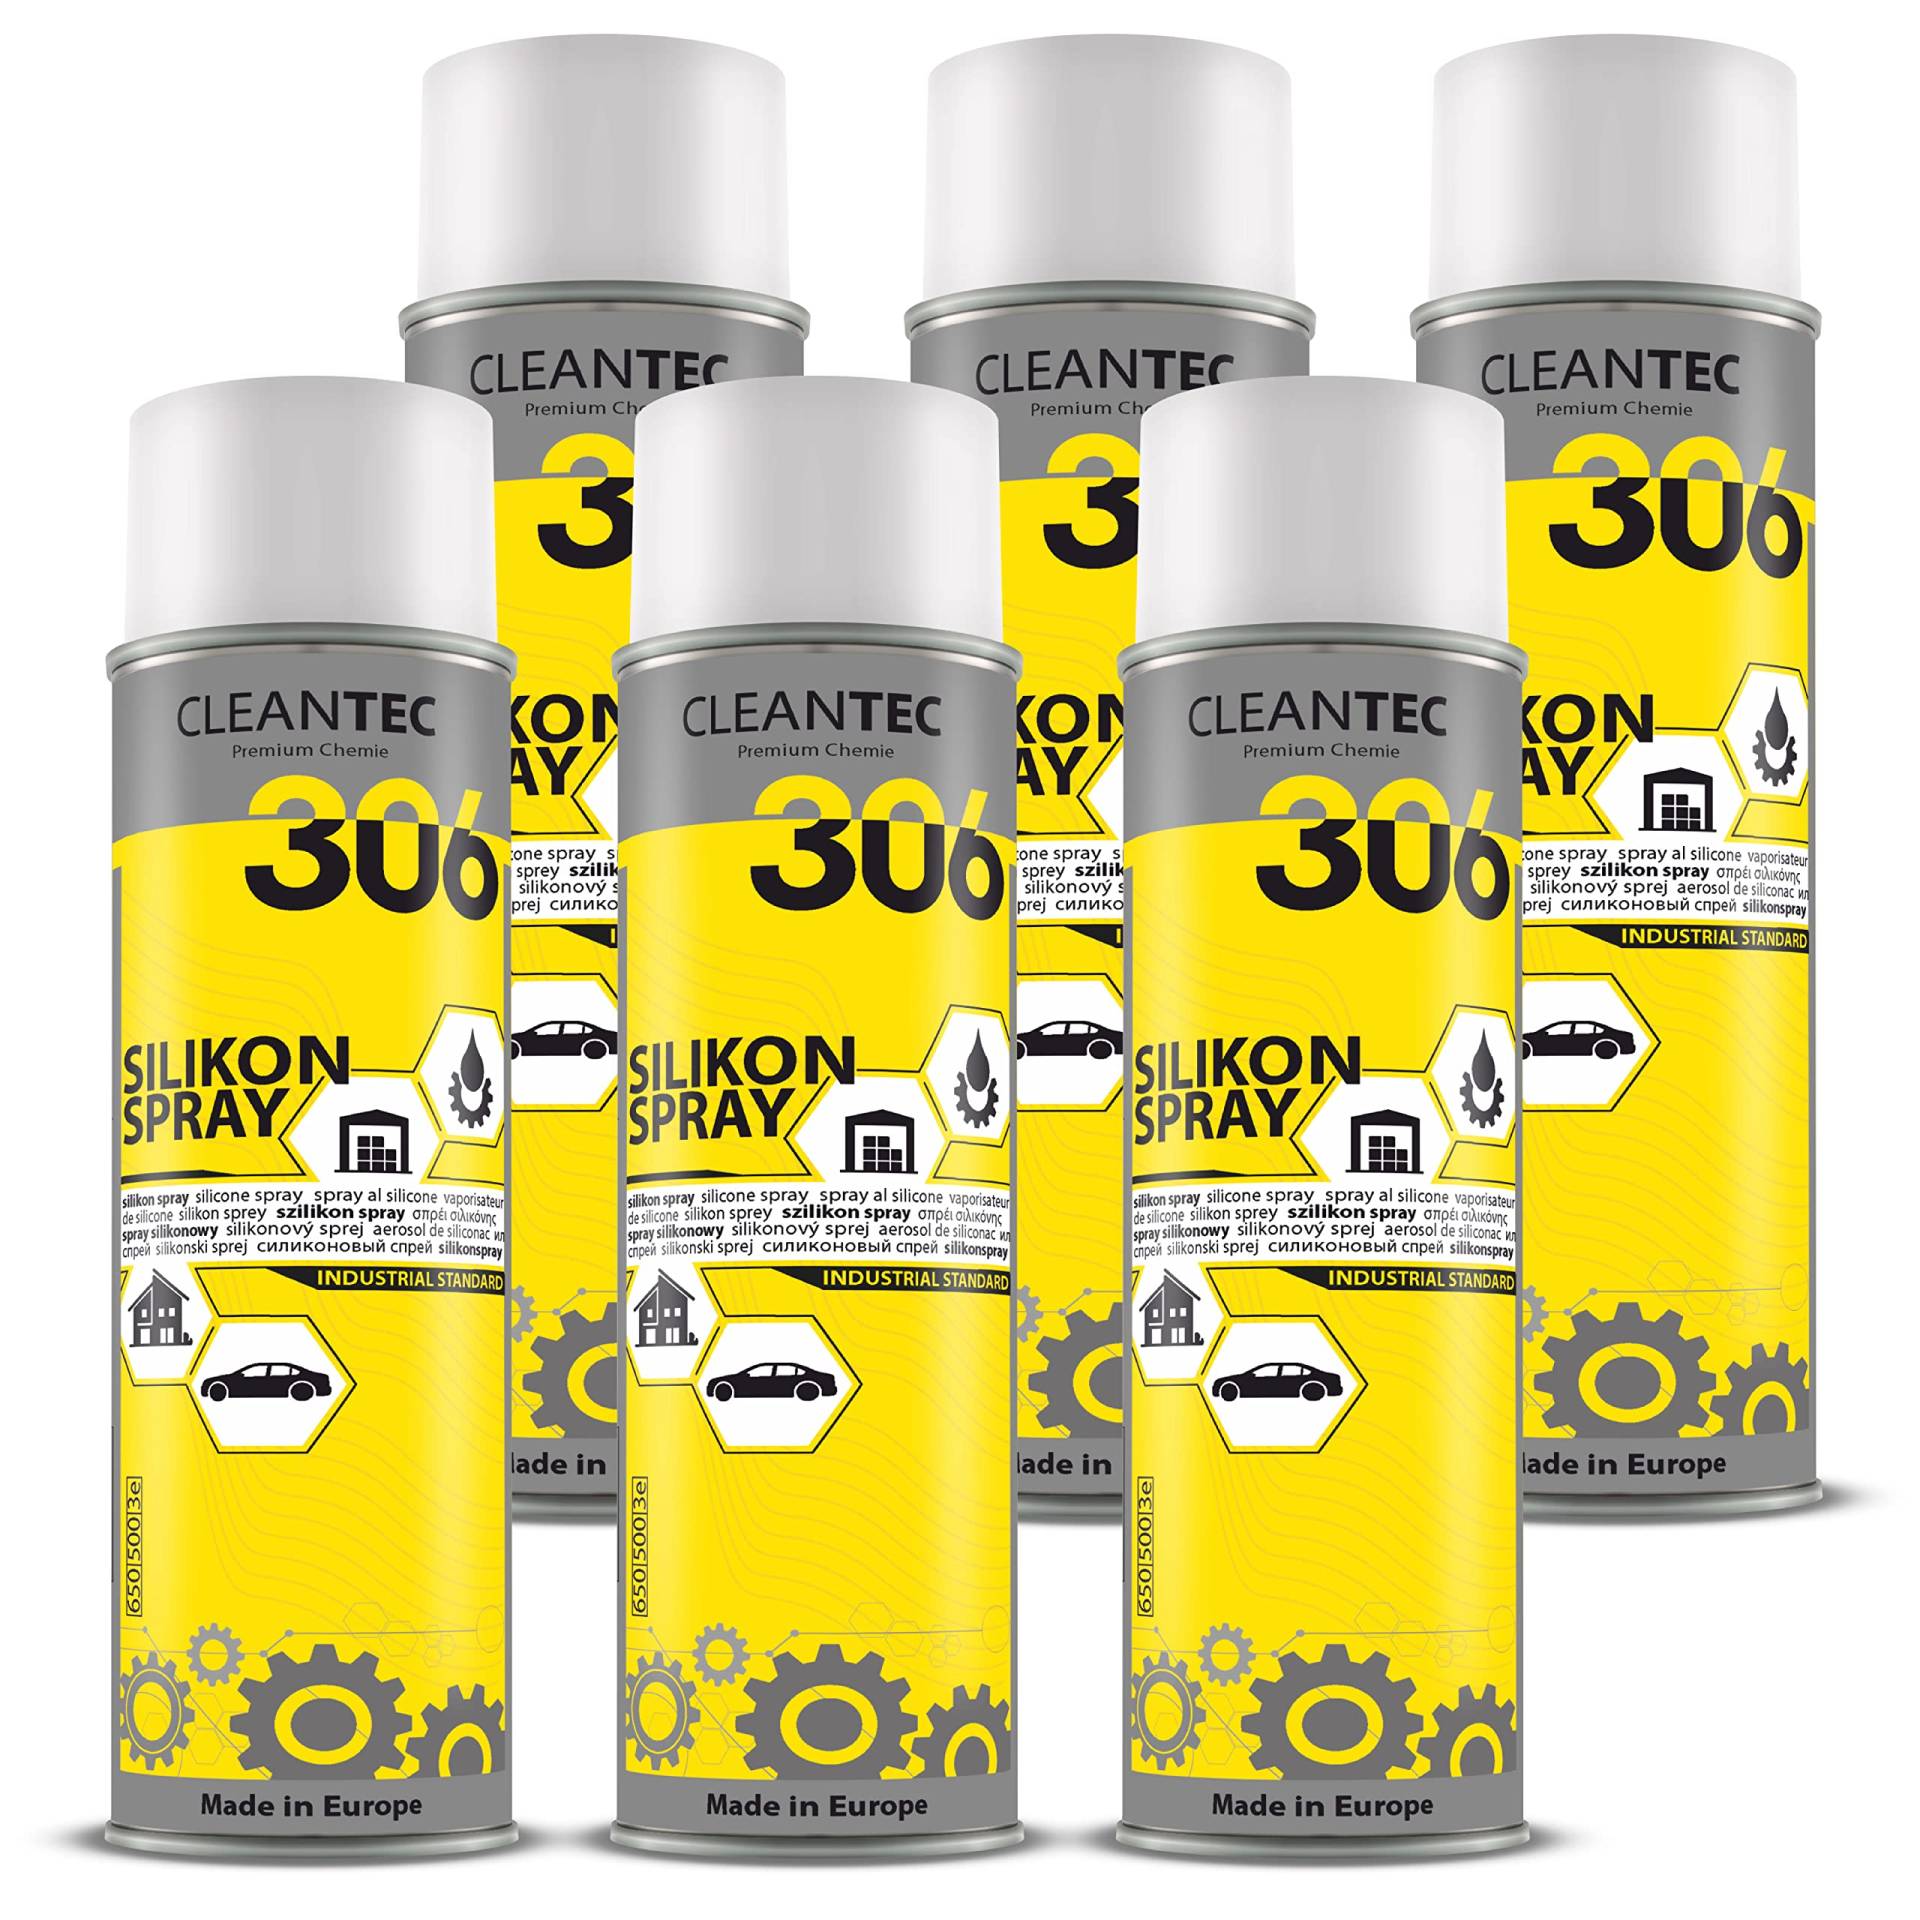 CleanTEC 306 Silikonspray 500ml farblos, schmiert, pflegt, schützt Gummi-, Kunststoff-, Holz- und Metallteile (6) von cms CleanTEC GmbH